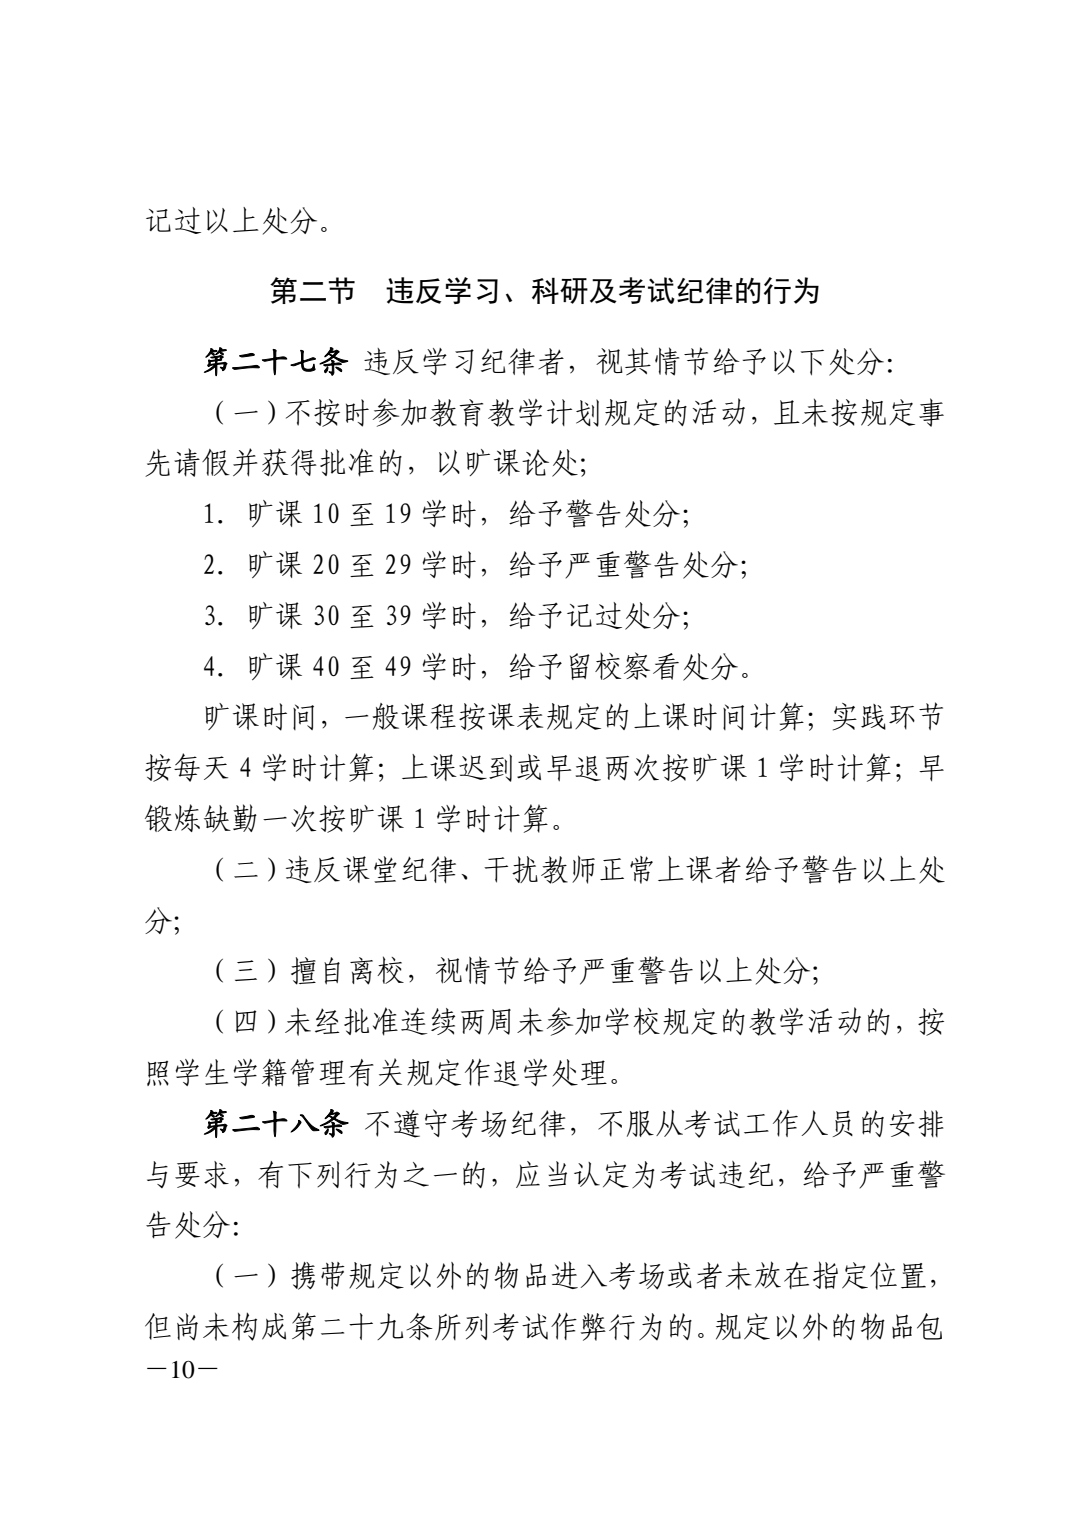 关于印发《南昌大学学生纪律处分办法（2021年修订）》的通知_pdf_16180286971.jpg